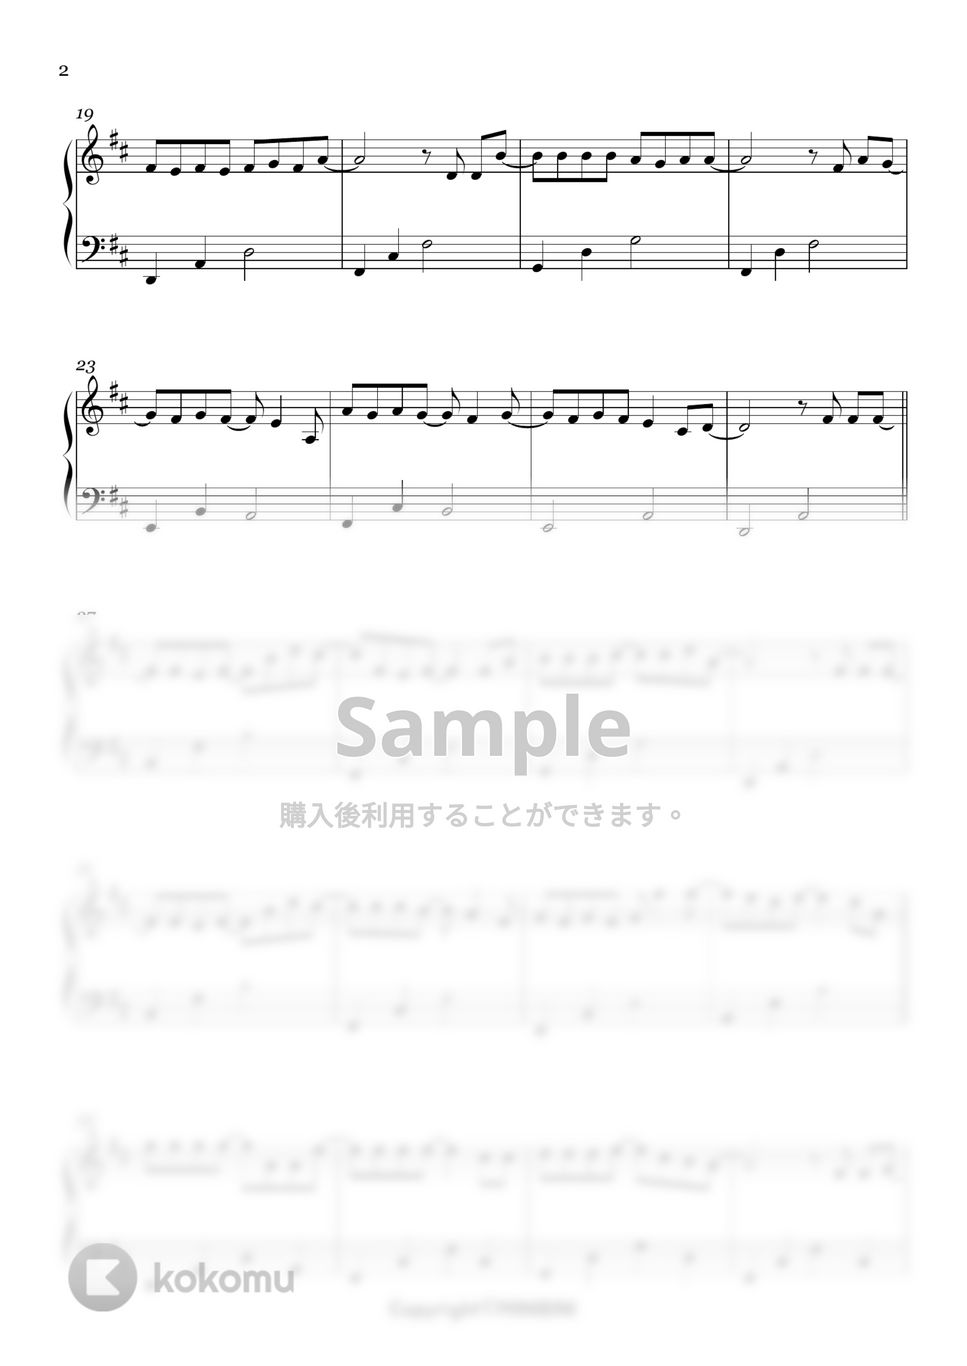 チョ・ジョンソク - アロハ (Easy ver.) by MINIBINI